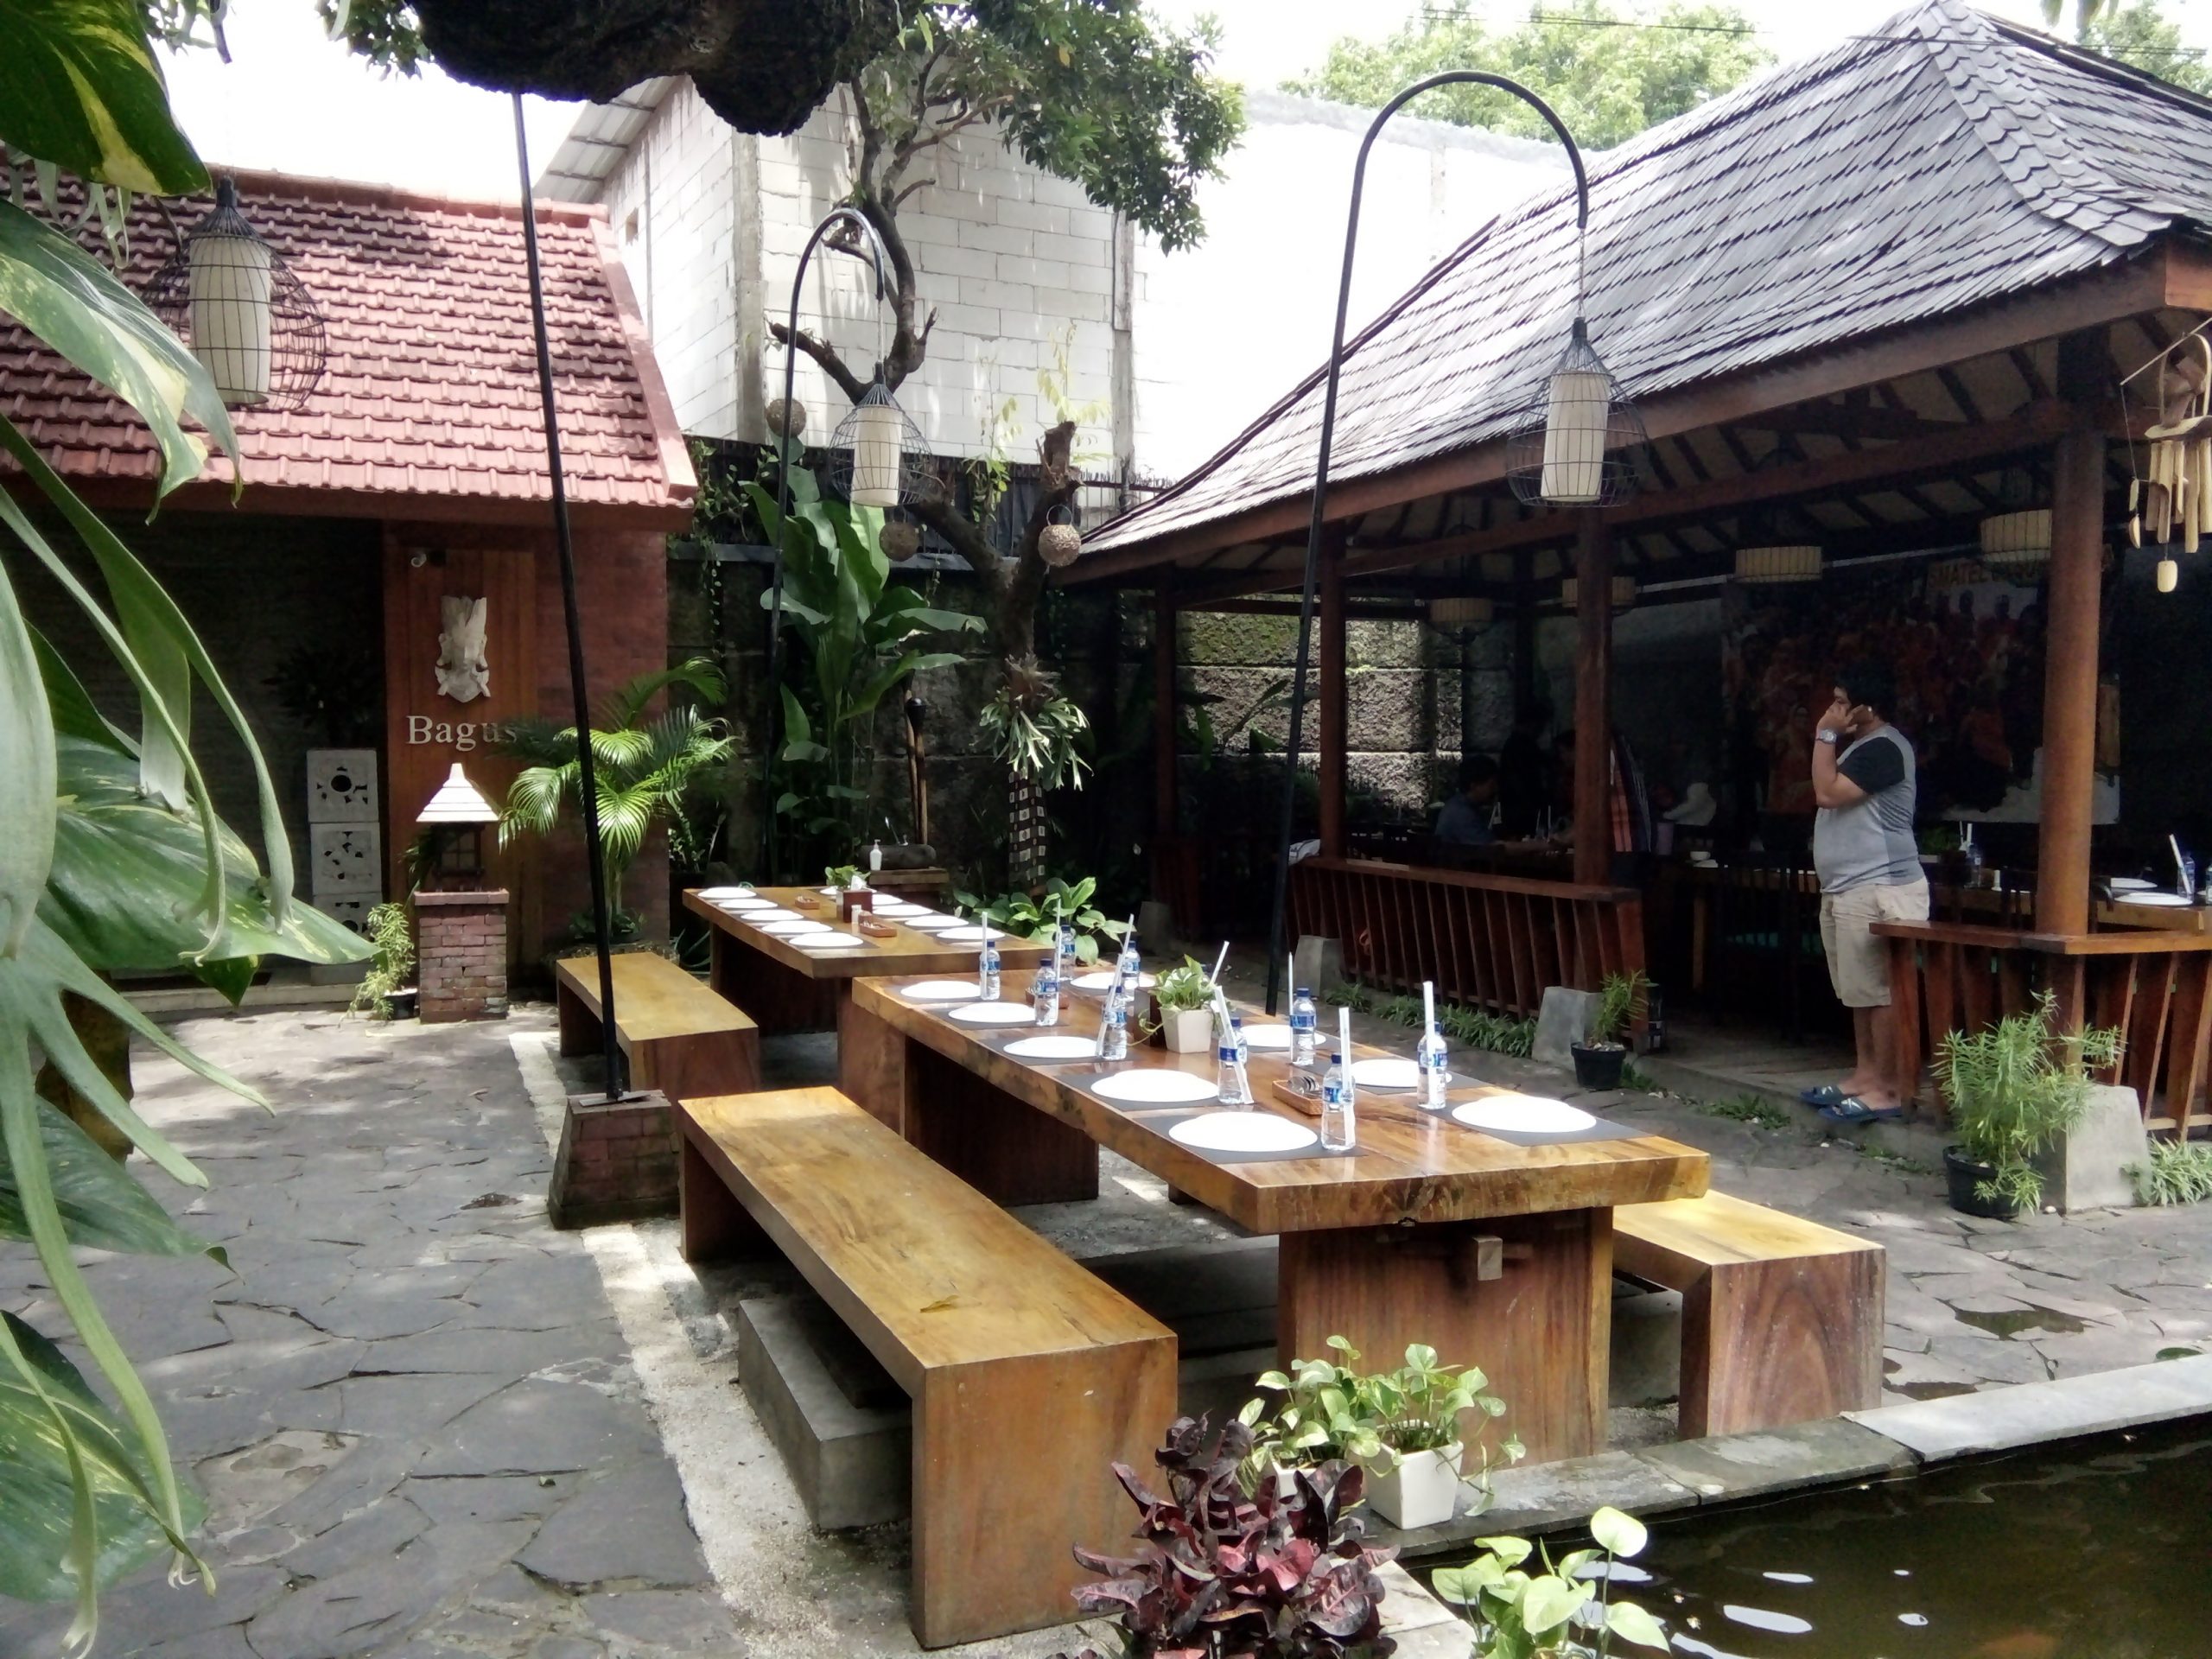 Tempat makan outdoor di Surabaya